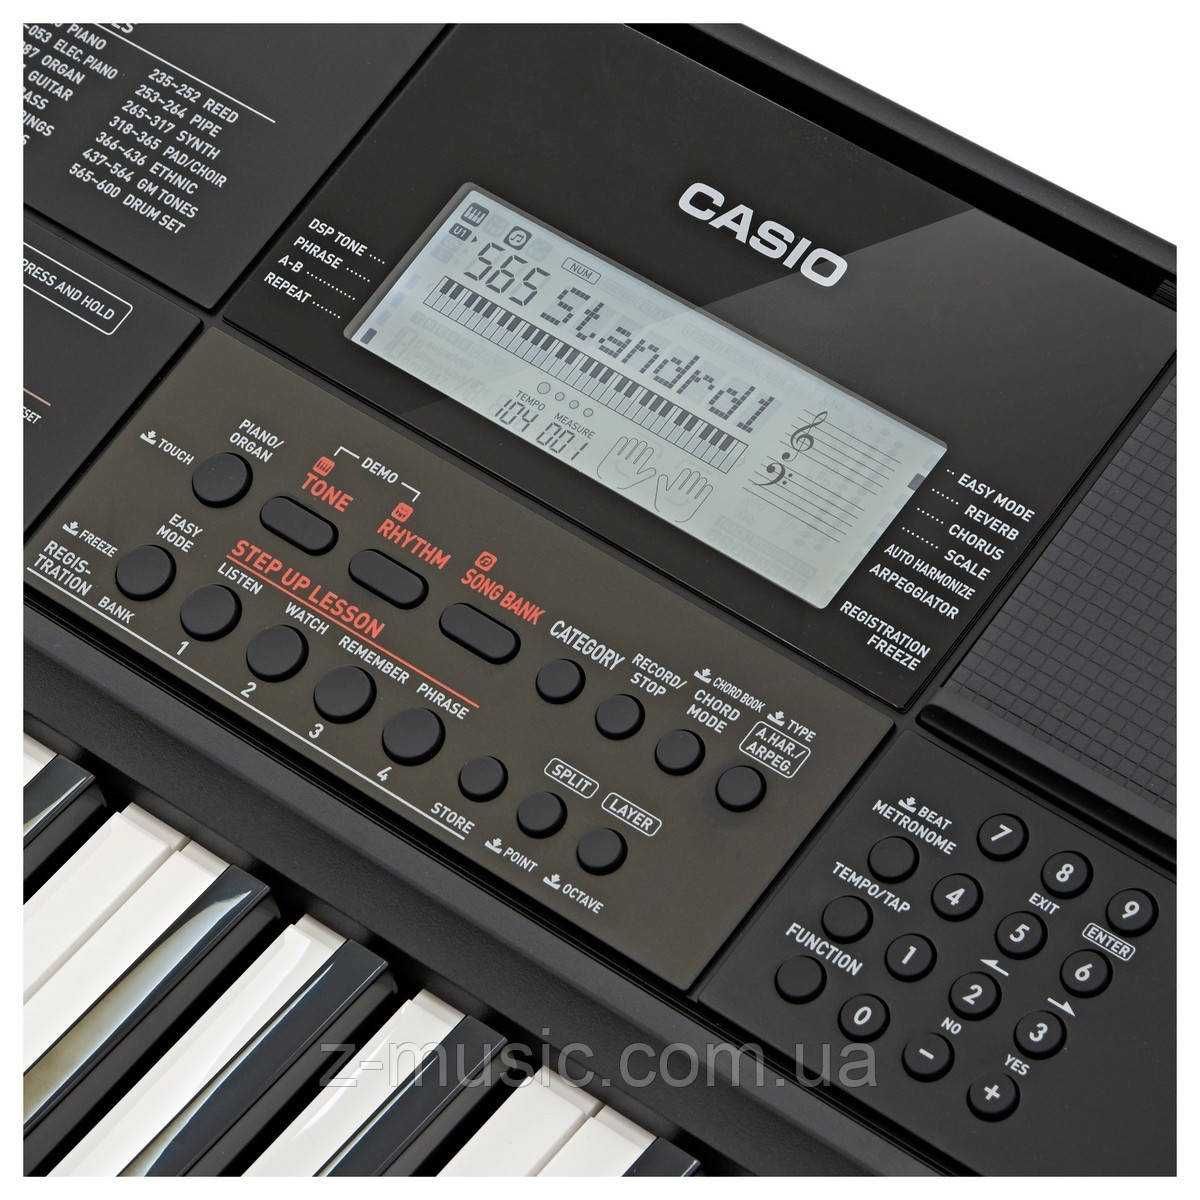 Синтезатор  Casio CT-X700 динамика обучение полифония 2-рабочий +новый